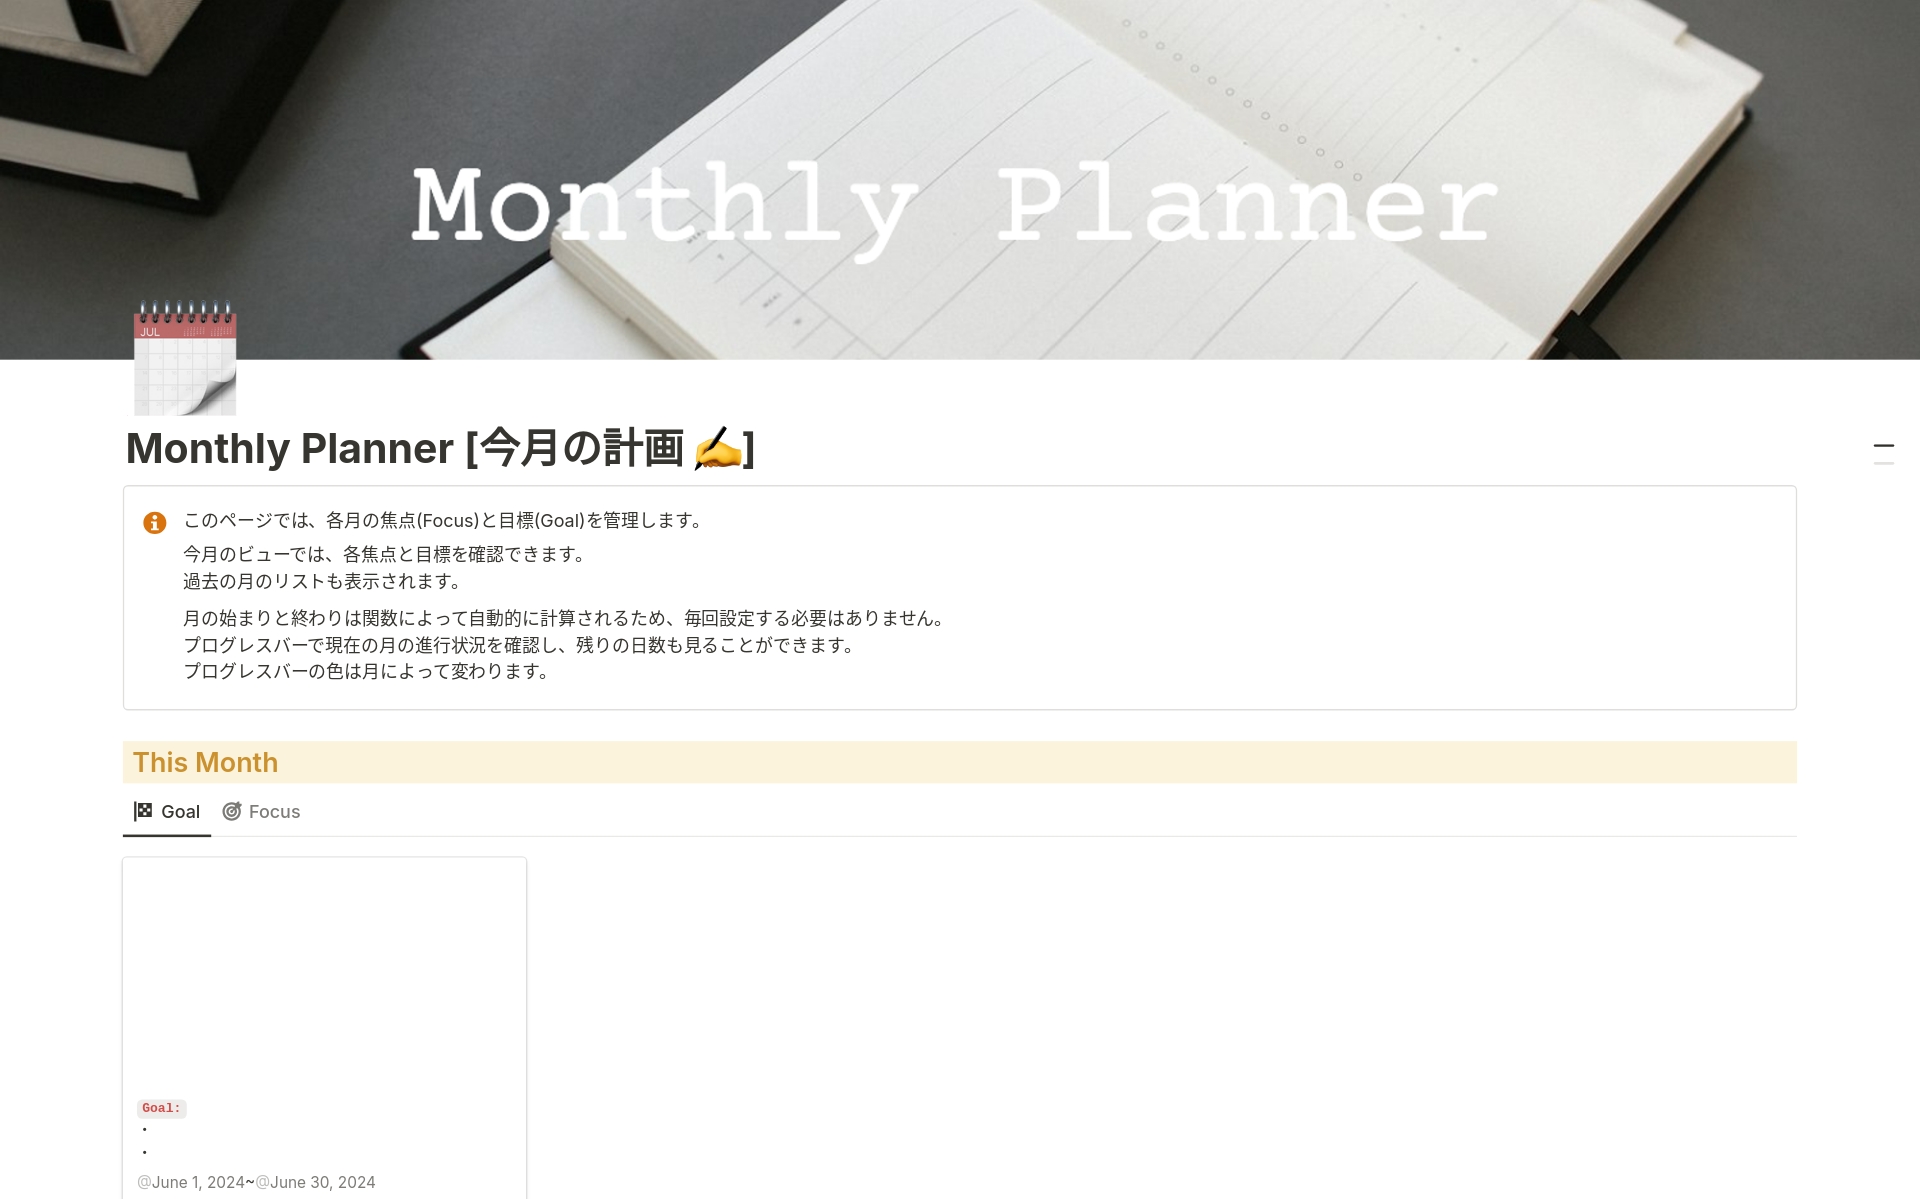 Monthly Planner 月間計画のテンプレートのプレビュー